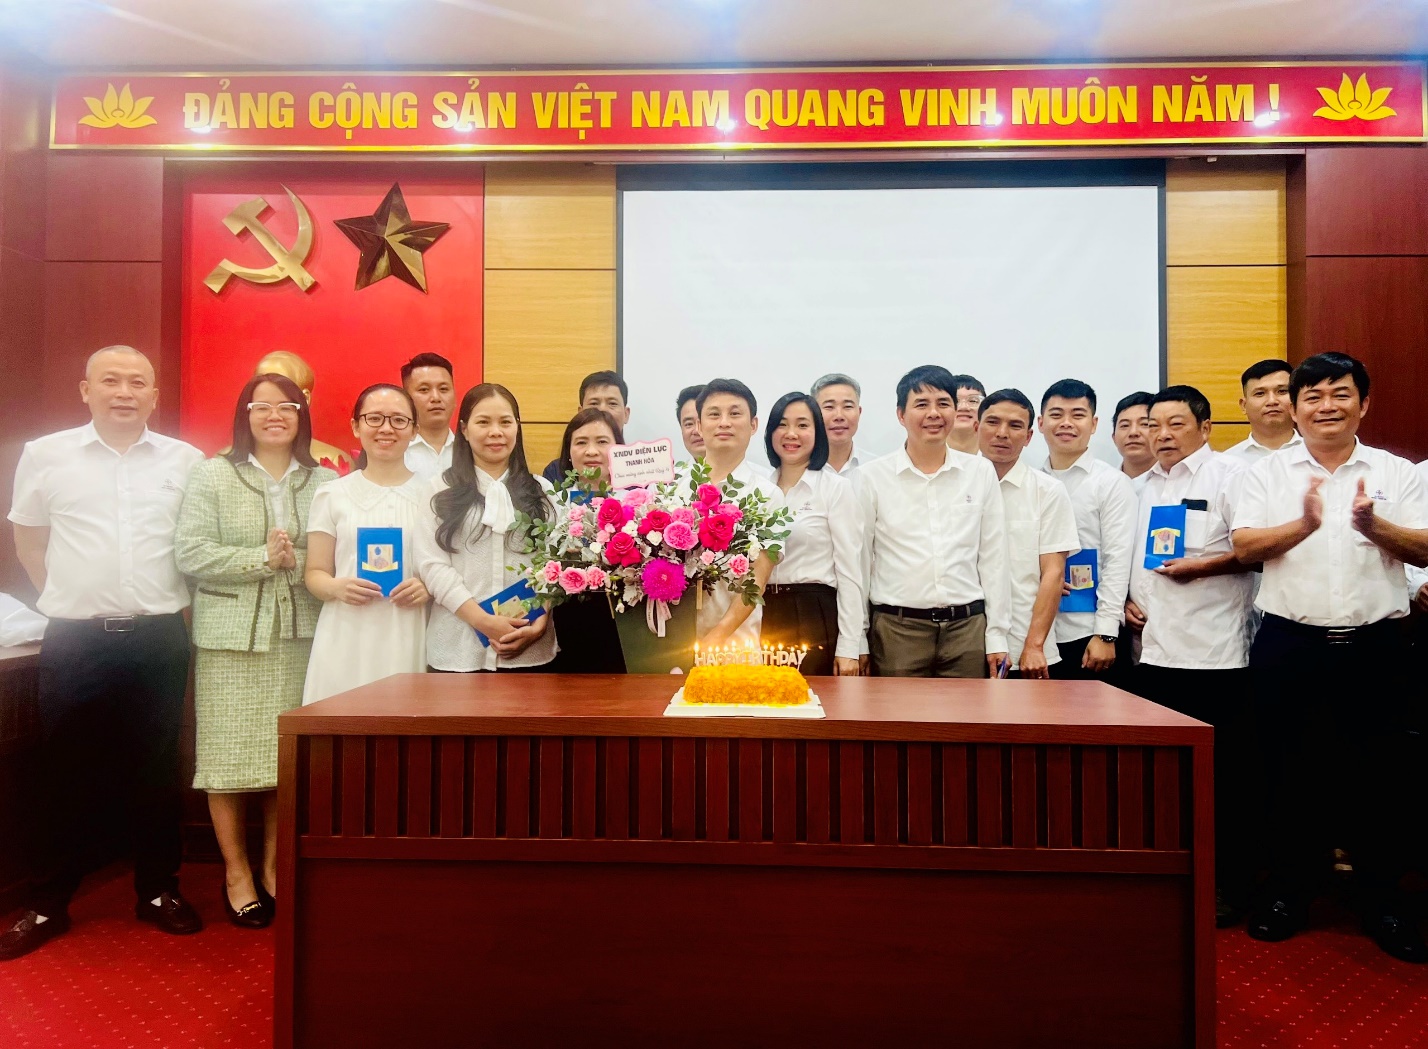 Xí nghiệp Dịch vụ Điện lực Thanh Hoá tổ chức sinh nhật cho CBCNV có sinh nhật trong quý IV